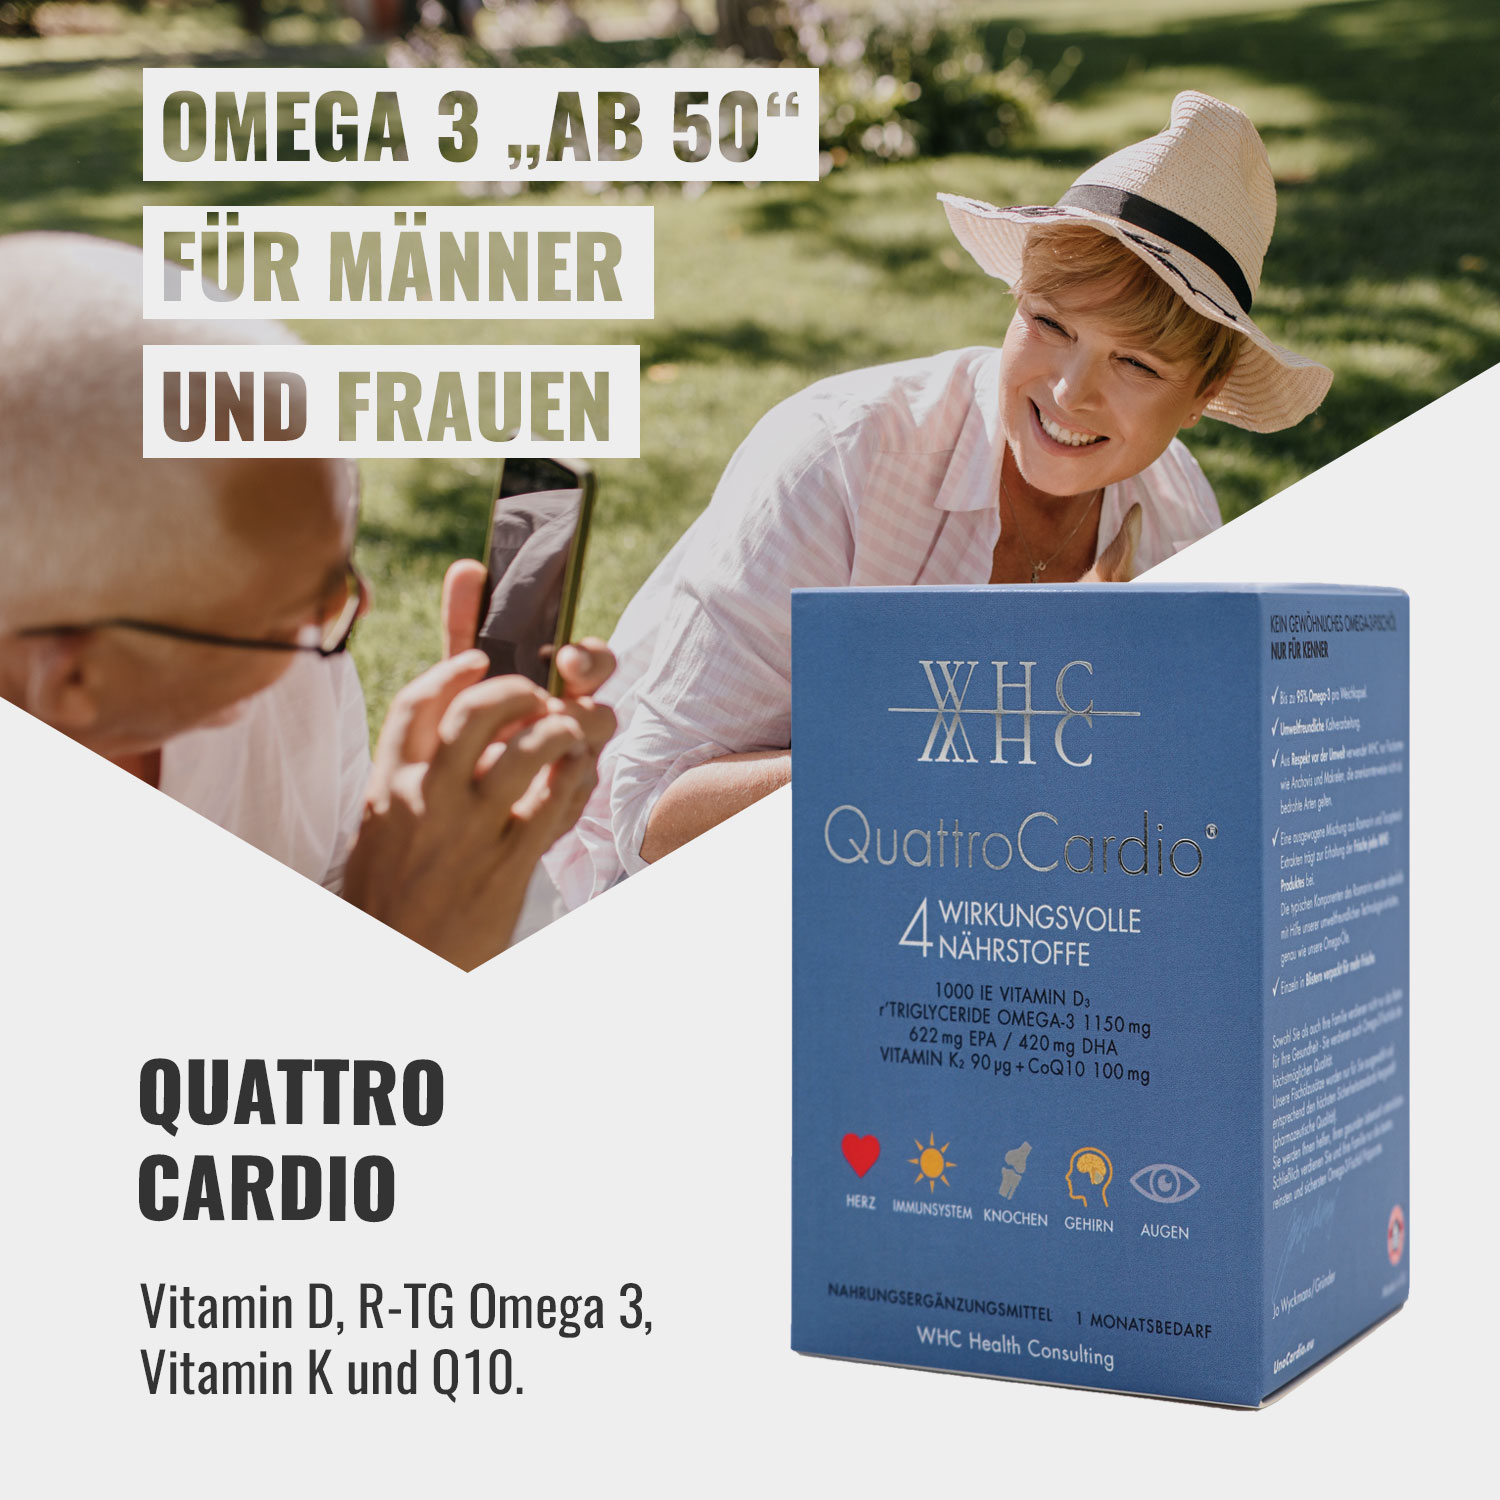 WHC Quattrocardio Omega 3